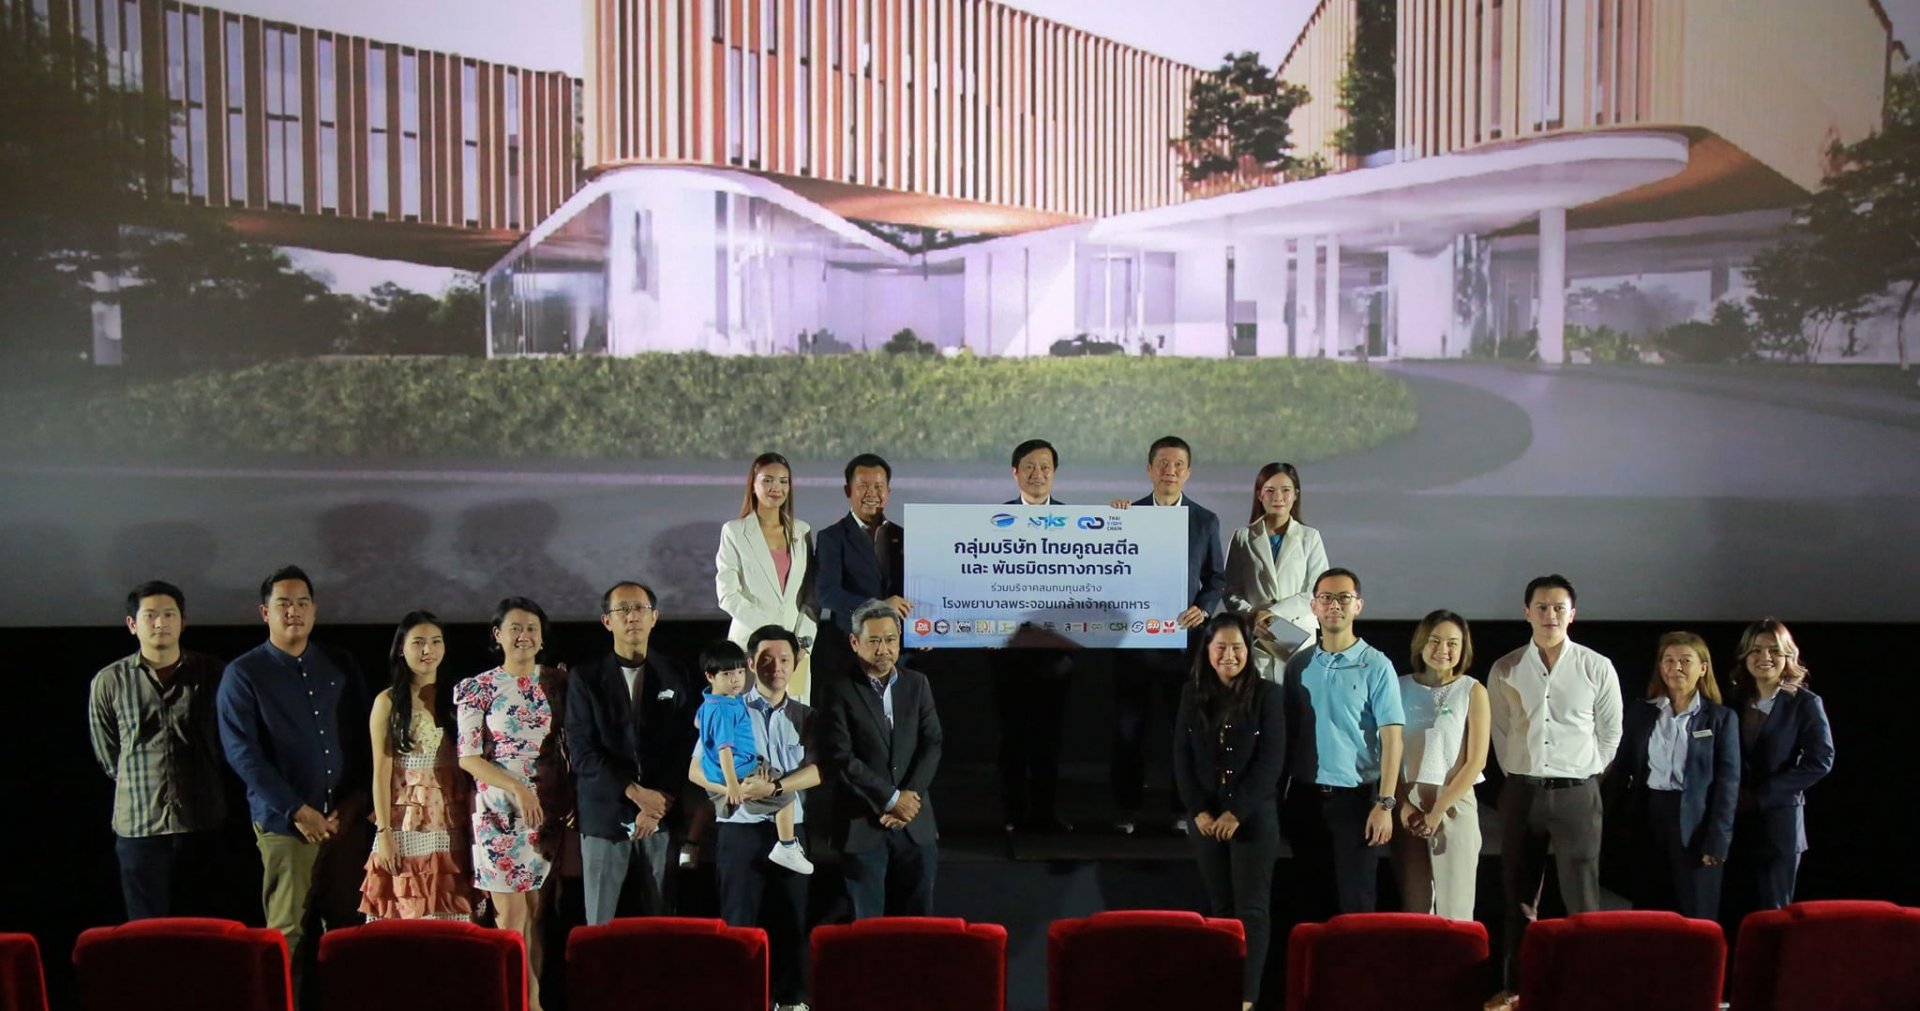 กลุ่มบริษัท ไทยคูณสตีล ร่วมกับ สจล. เปิดมิติใหม่กับนวัตกรรมข้ามอุตสาหกรรม ถ่ายทอดผ่านภาพยนตร์สั้น "Thai Koon Chain for Tomorrow"